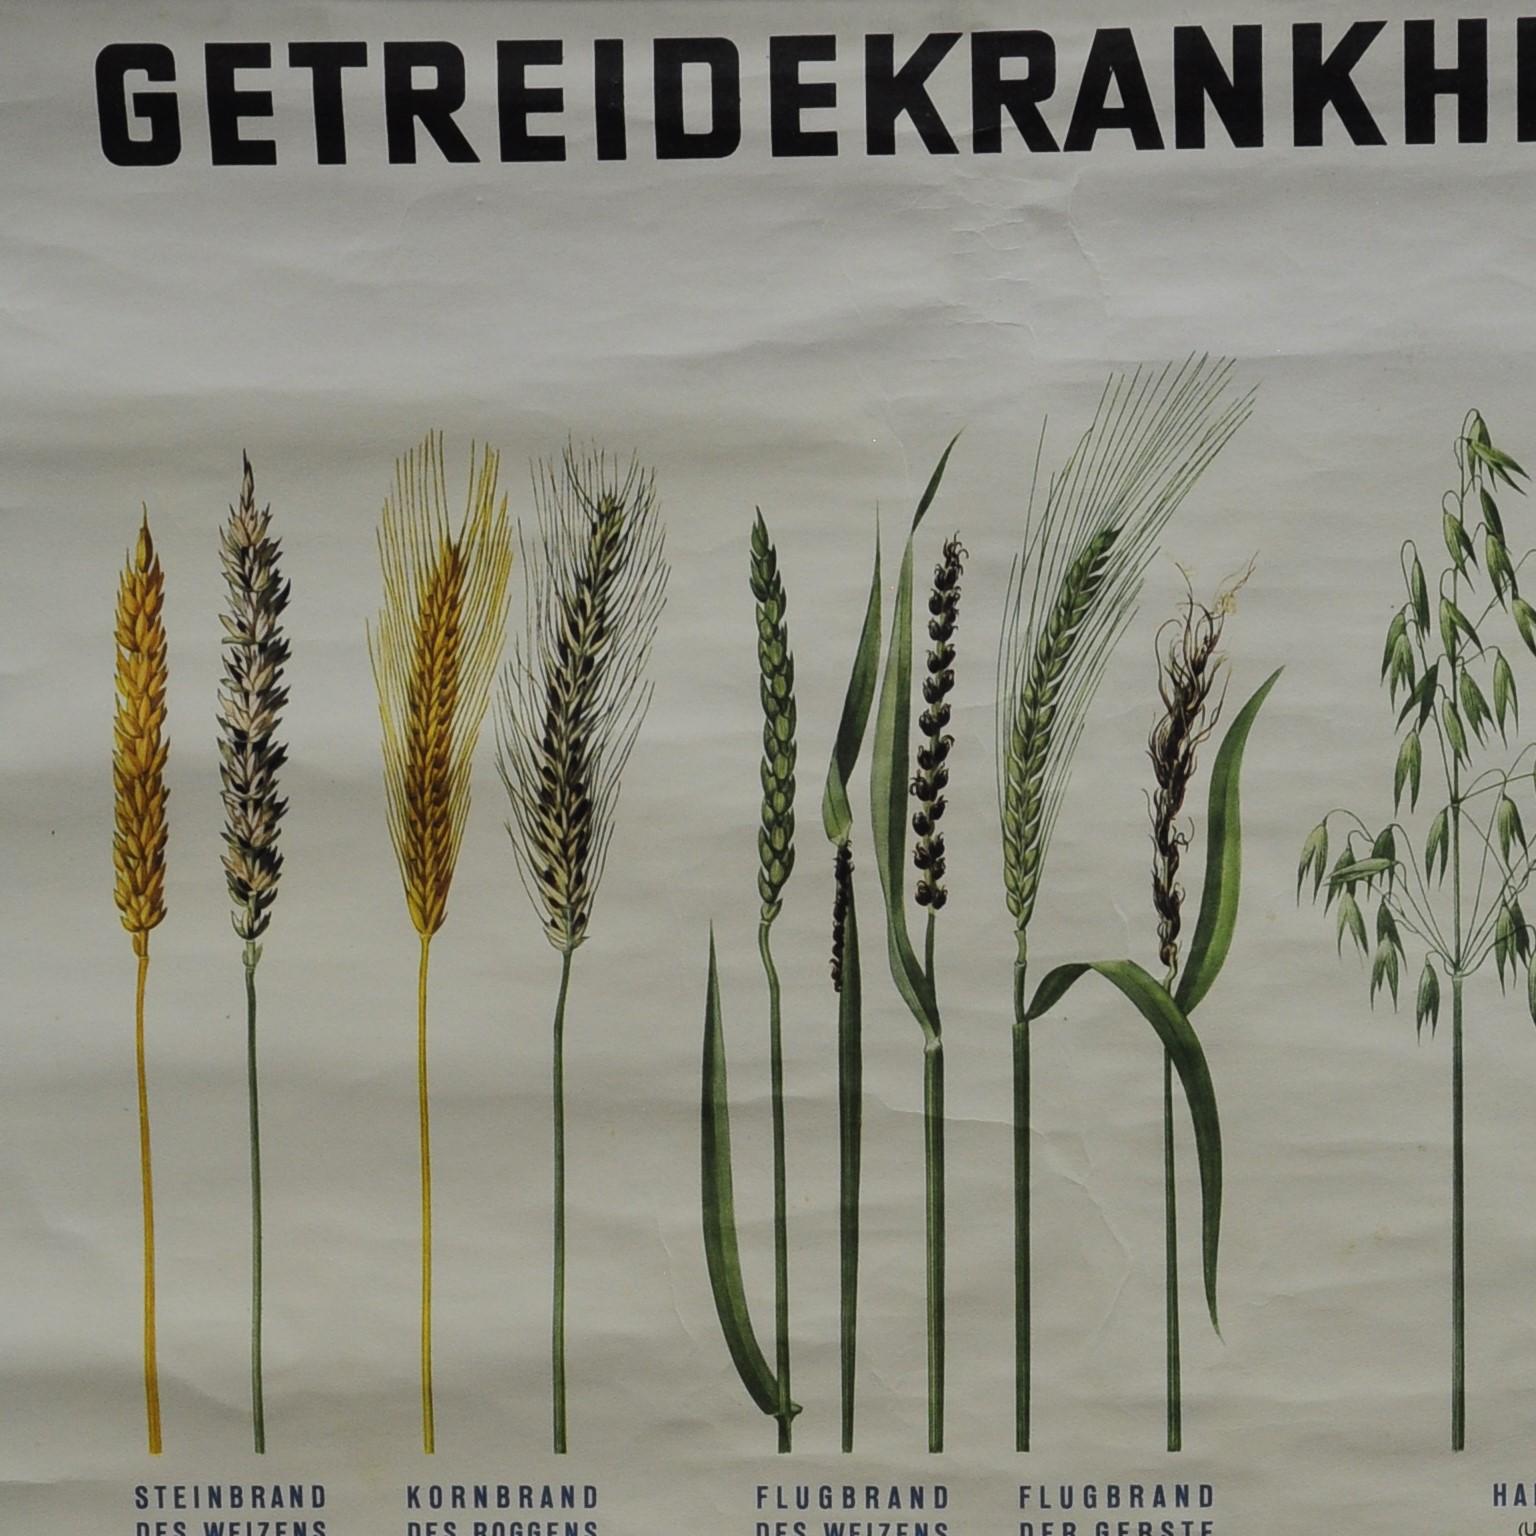 Un tableau botanique vintage à enrouler montre les différents types de maladies des cultures. Il a été publié par l'institut phytosanitaire fédéral de Vienne. Impression colorée sur papier renforcé par de la toile.
Mesures :
Largeur 69,50 cm (27,36